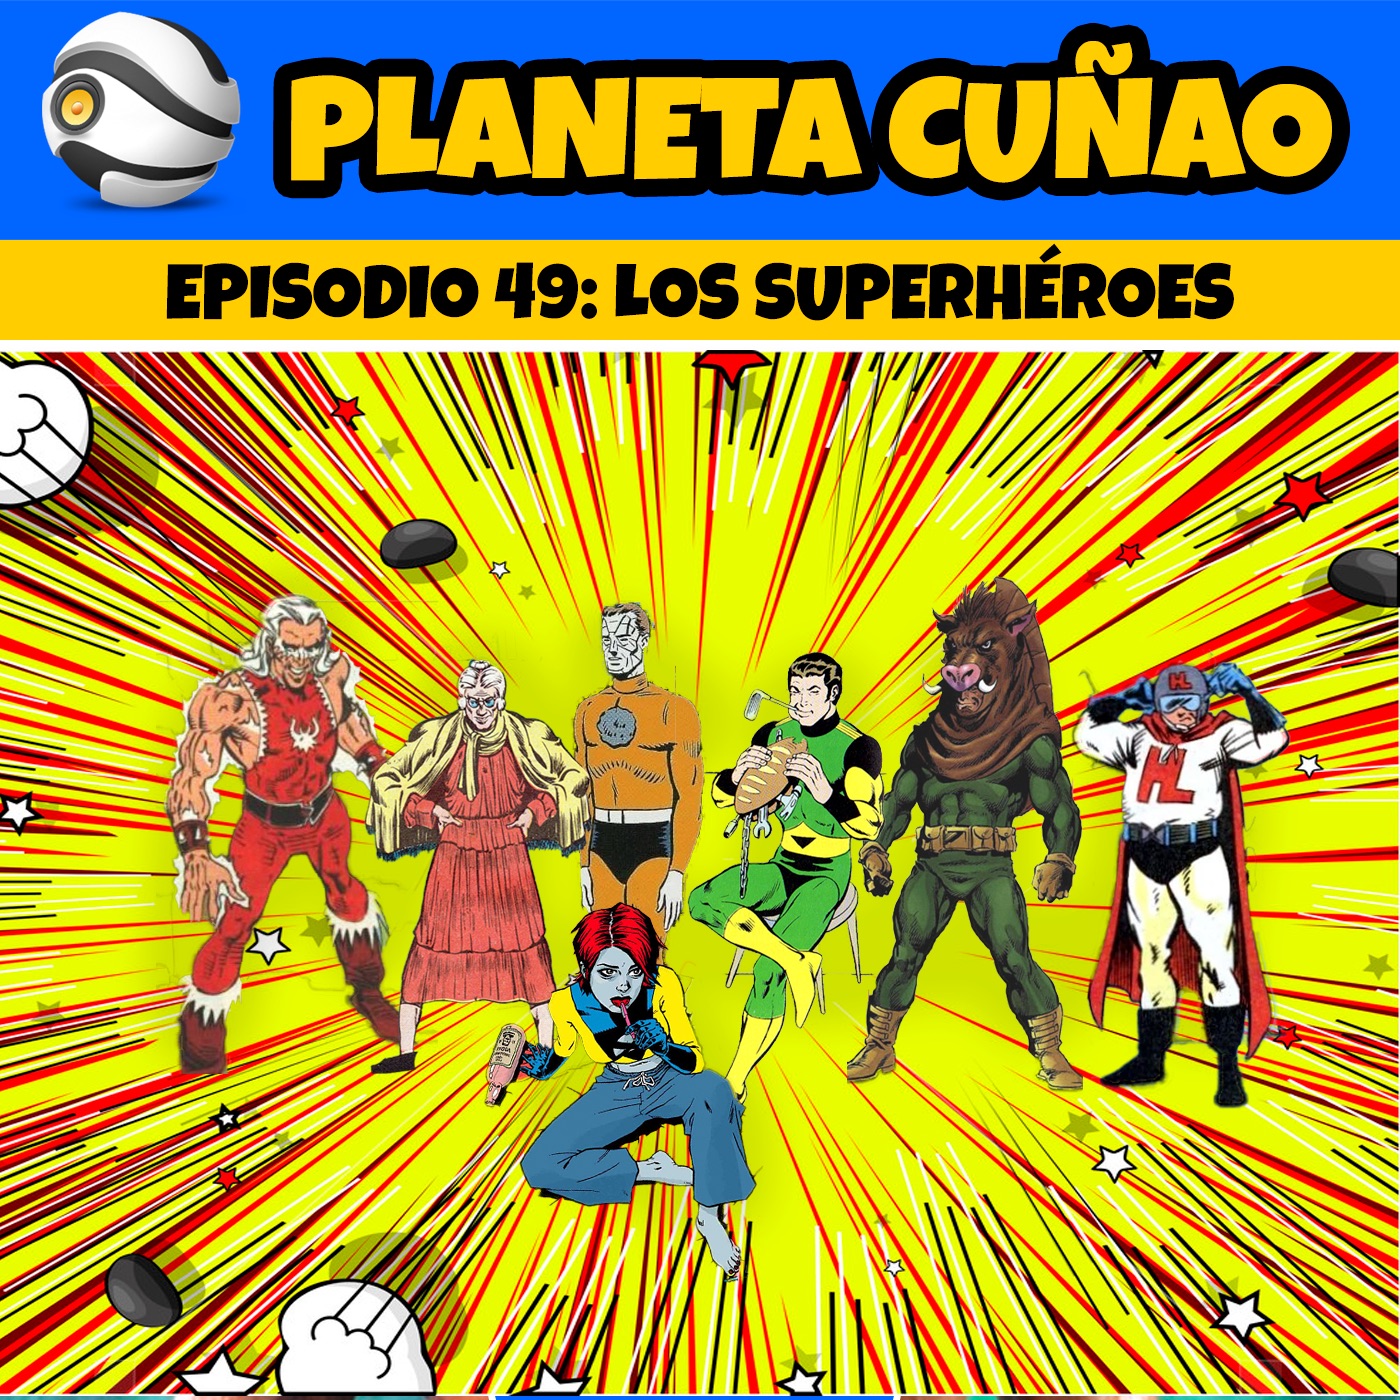 Episodio 49: Los superhéroes